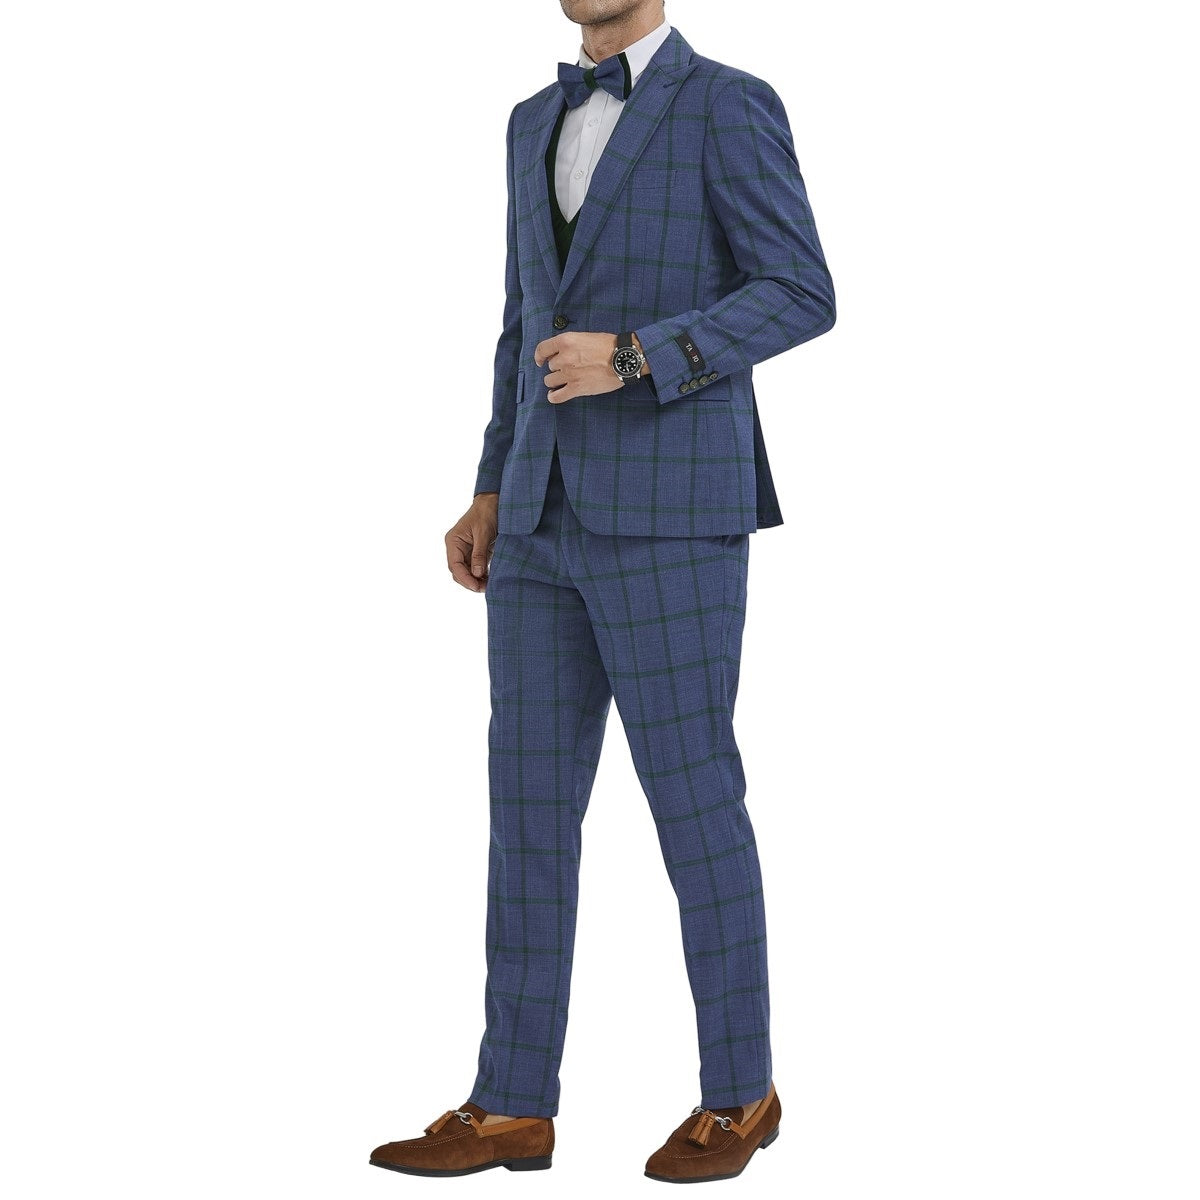 Traje Formal para Hombre TA-M351SK-03 - Formal Suit for Men